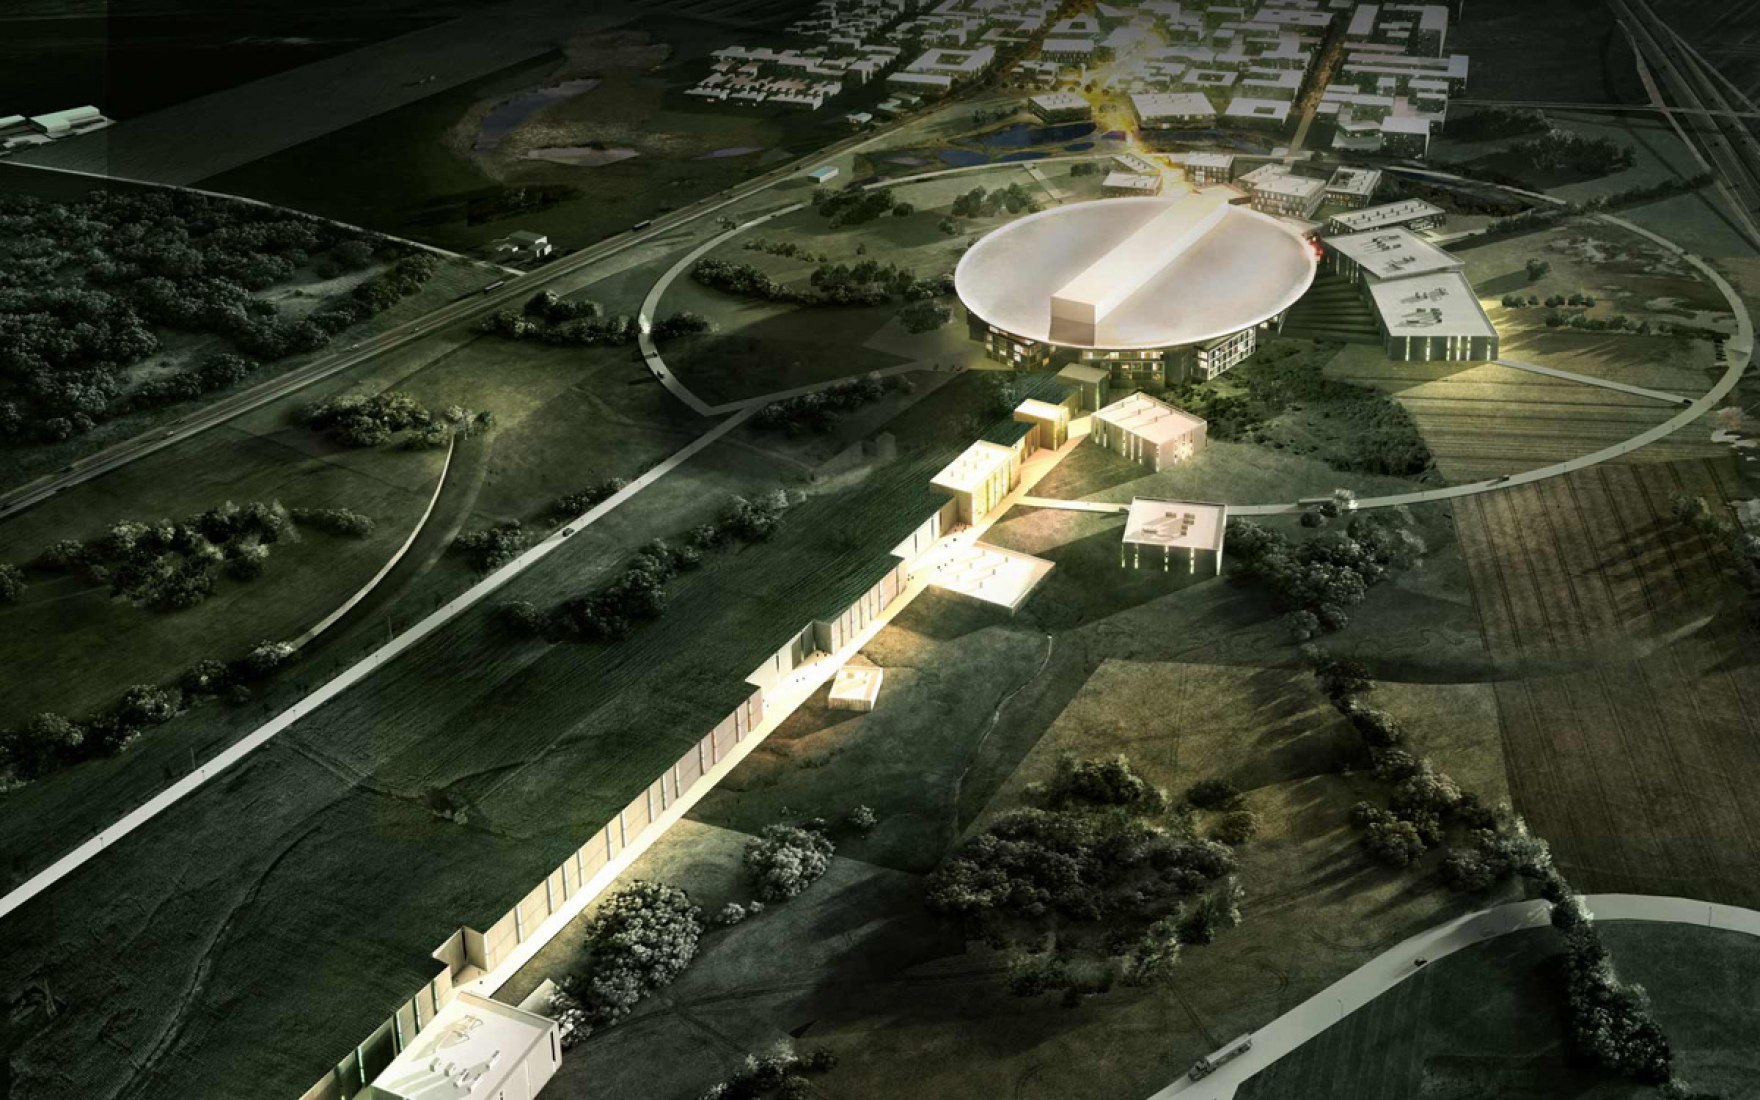 Vista general del proyecto ganador para la European Spallation Source (ESS) por Henning Larsen Architects, COBE y SLA.